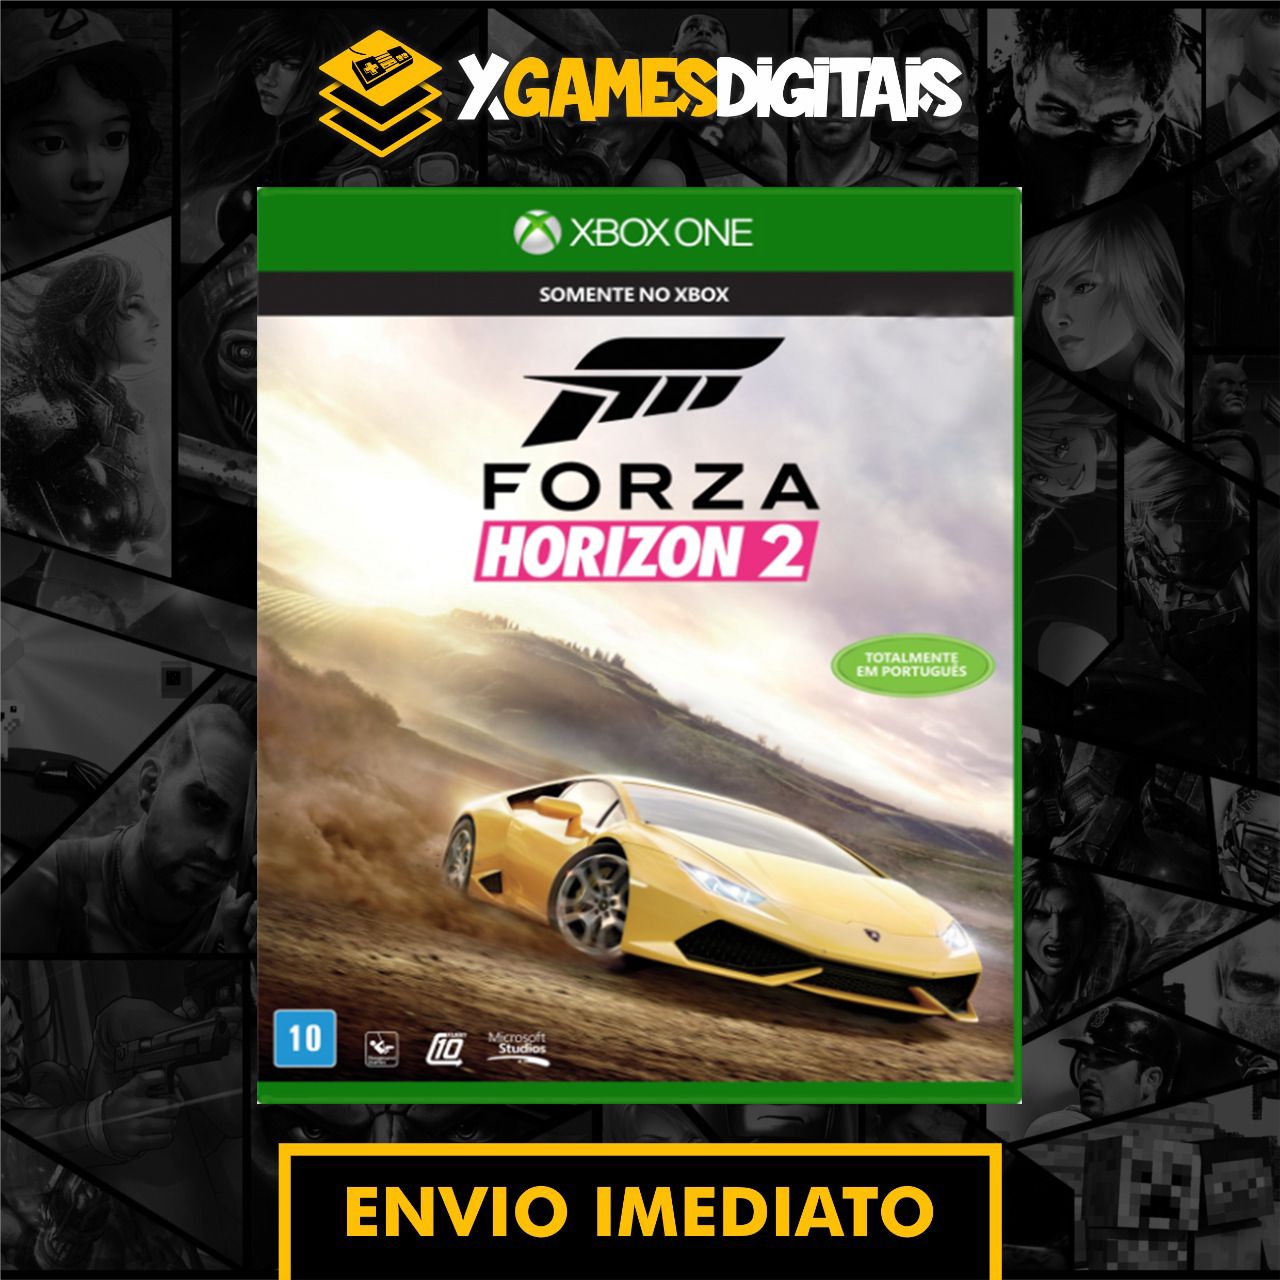 Forza Horizon 2 - Xbox One - Midia Digital - Xgamesdigitais - XGAMESDIGITAIS